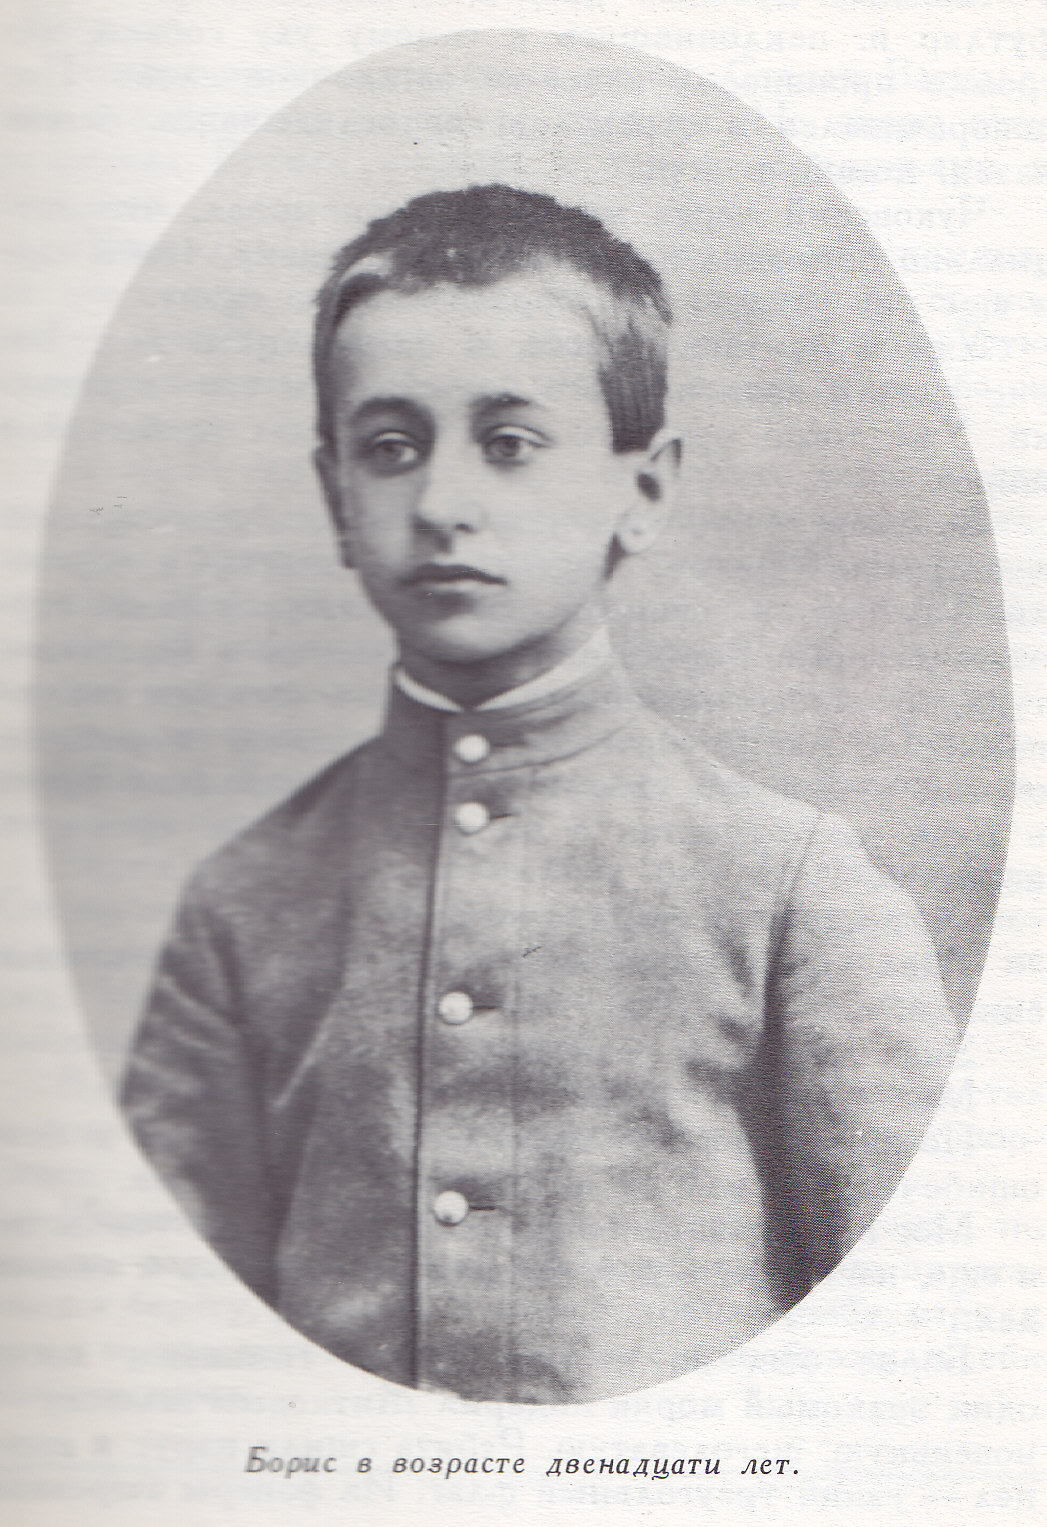 Нажмите для увеличения. Борис ,в возрасте 12 лет. Фото из книги Черненко, Г. «Вечный Колумб» (Фото из книги из фонда библиотеки) 